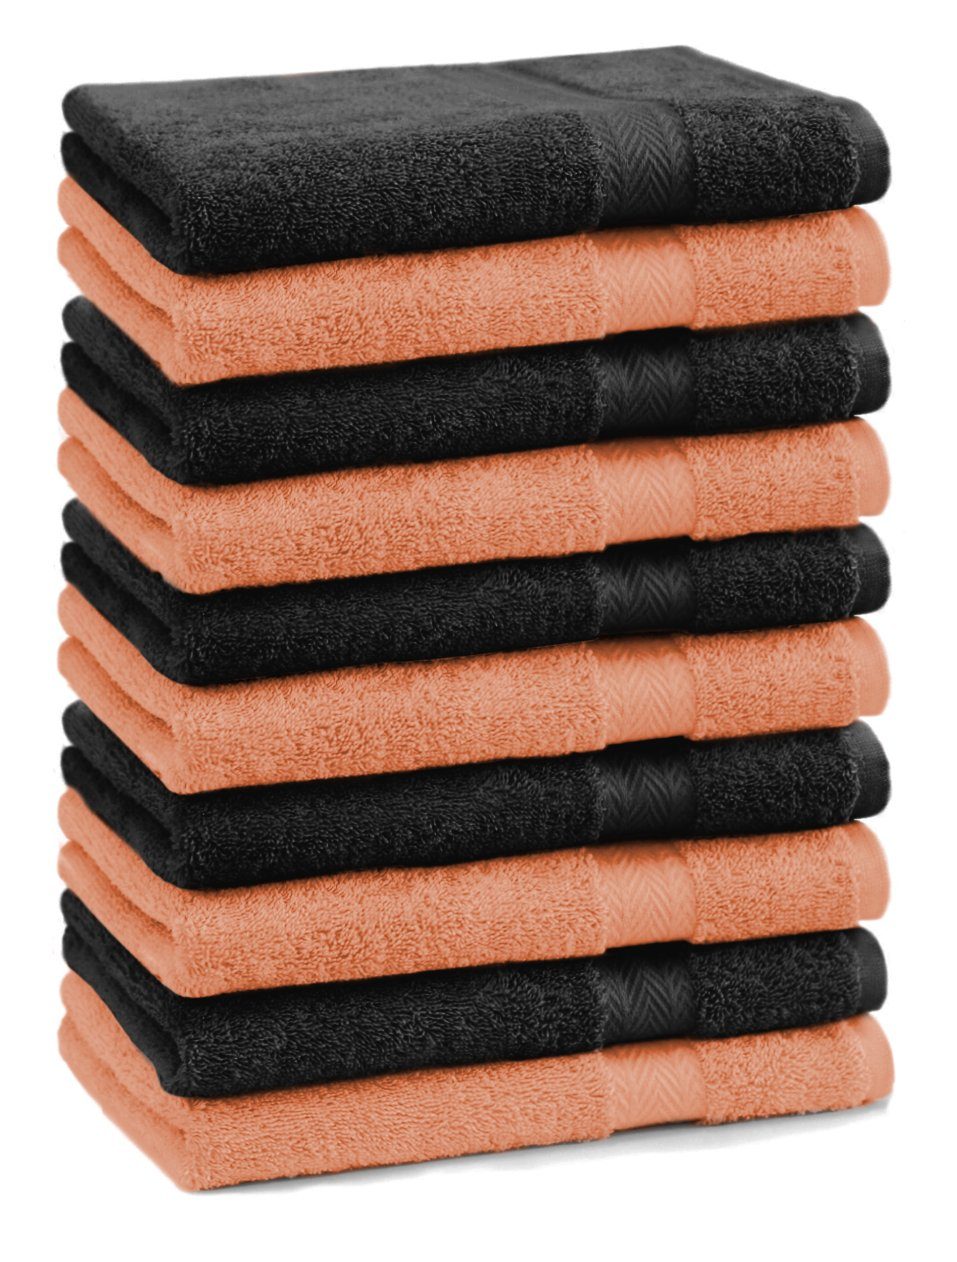 Betz Seiftuch 10 Stück Seiftücher Premium 100% Baumwolle Seiflappen Set 30x30 cm Farbe orange und schwarz